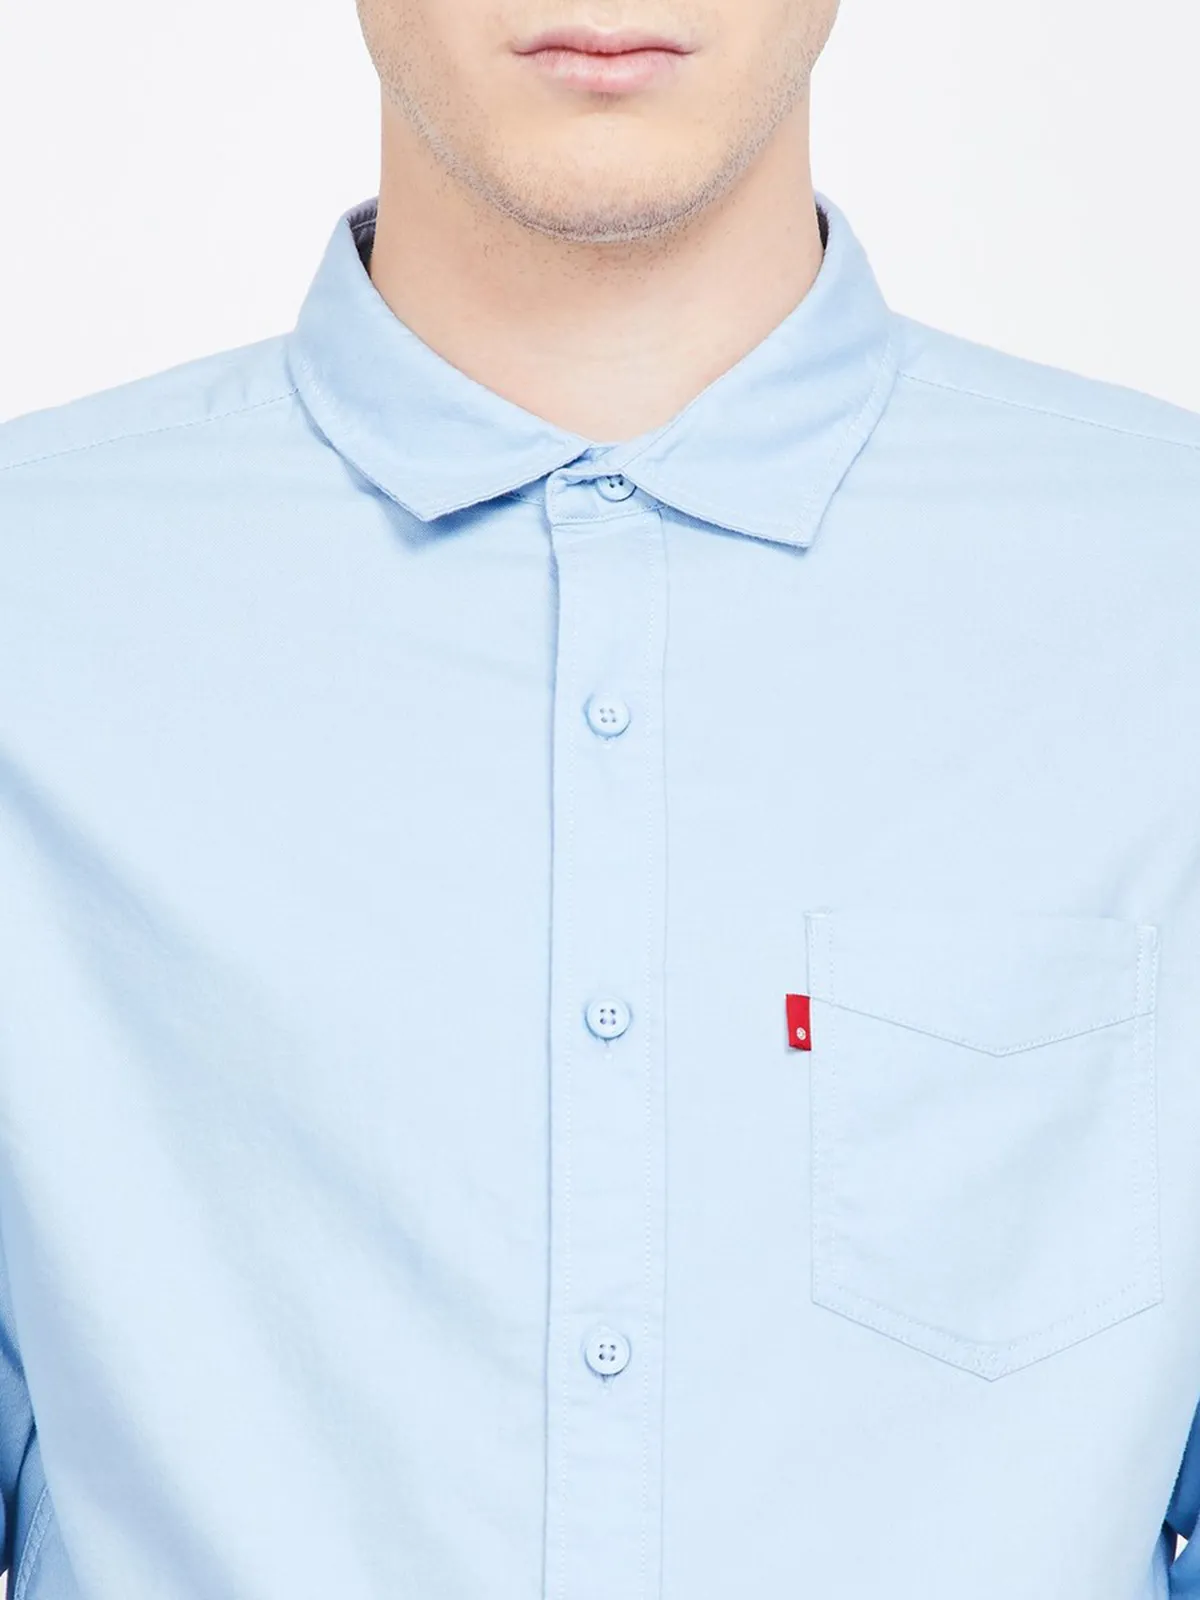 Levis light blue plain cotton shirt